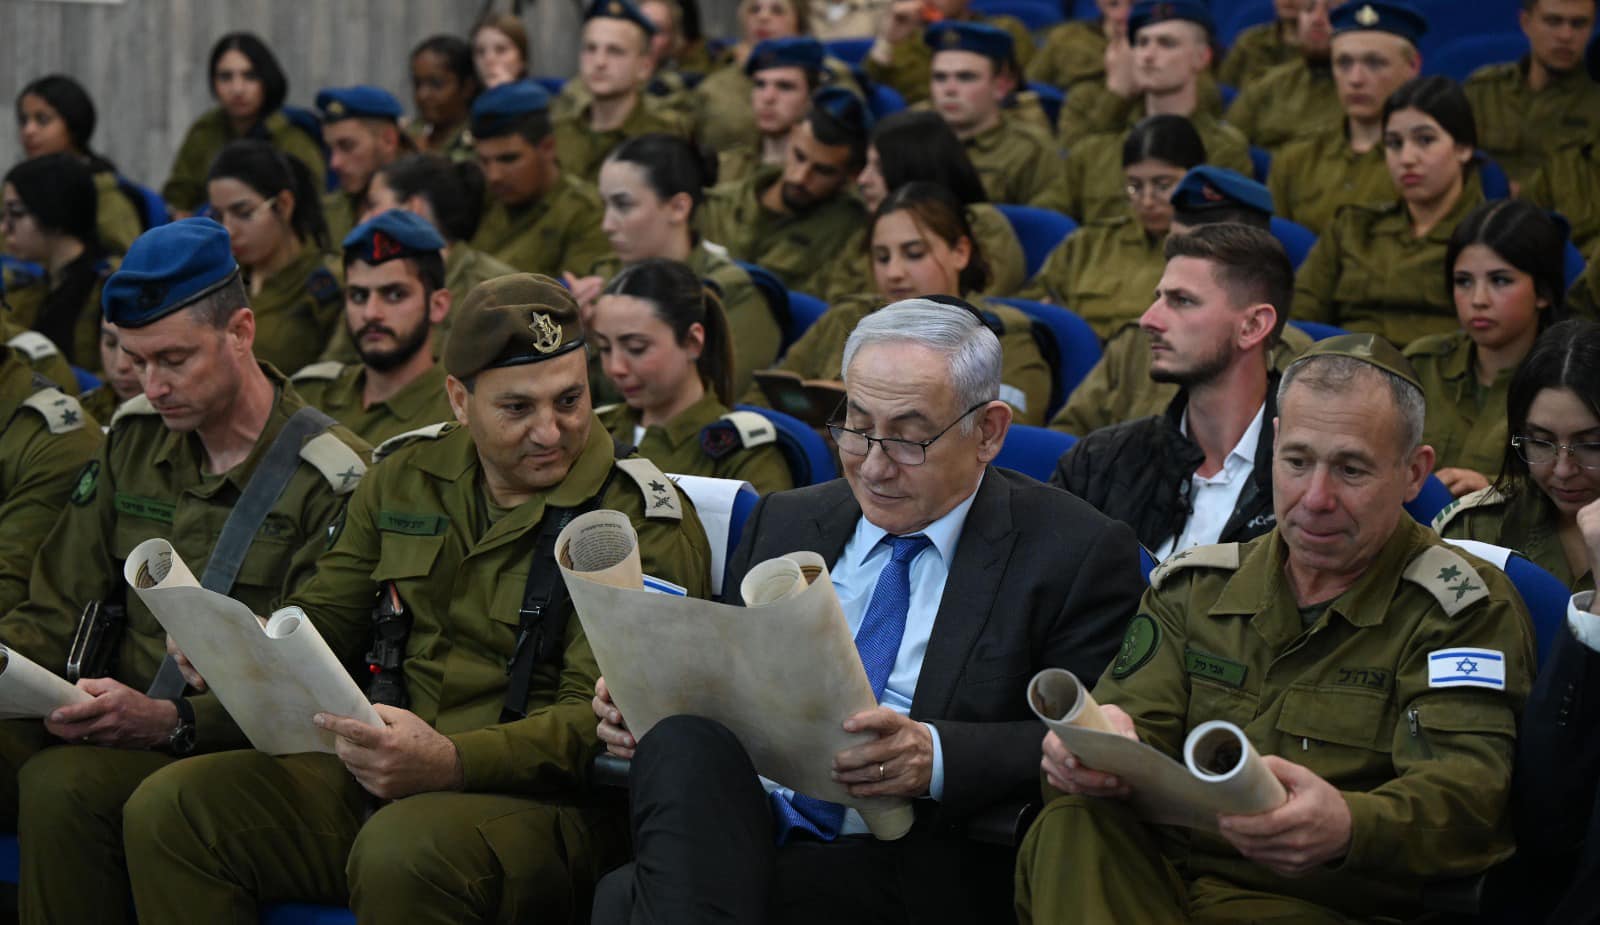 Război în Israel, ziua 214. Hamas și Tel-Aviv nu găsesc un punct comun. Palestinienii acceptă, Netanyahu spune nu